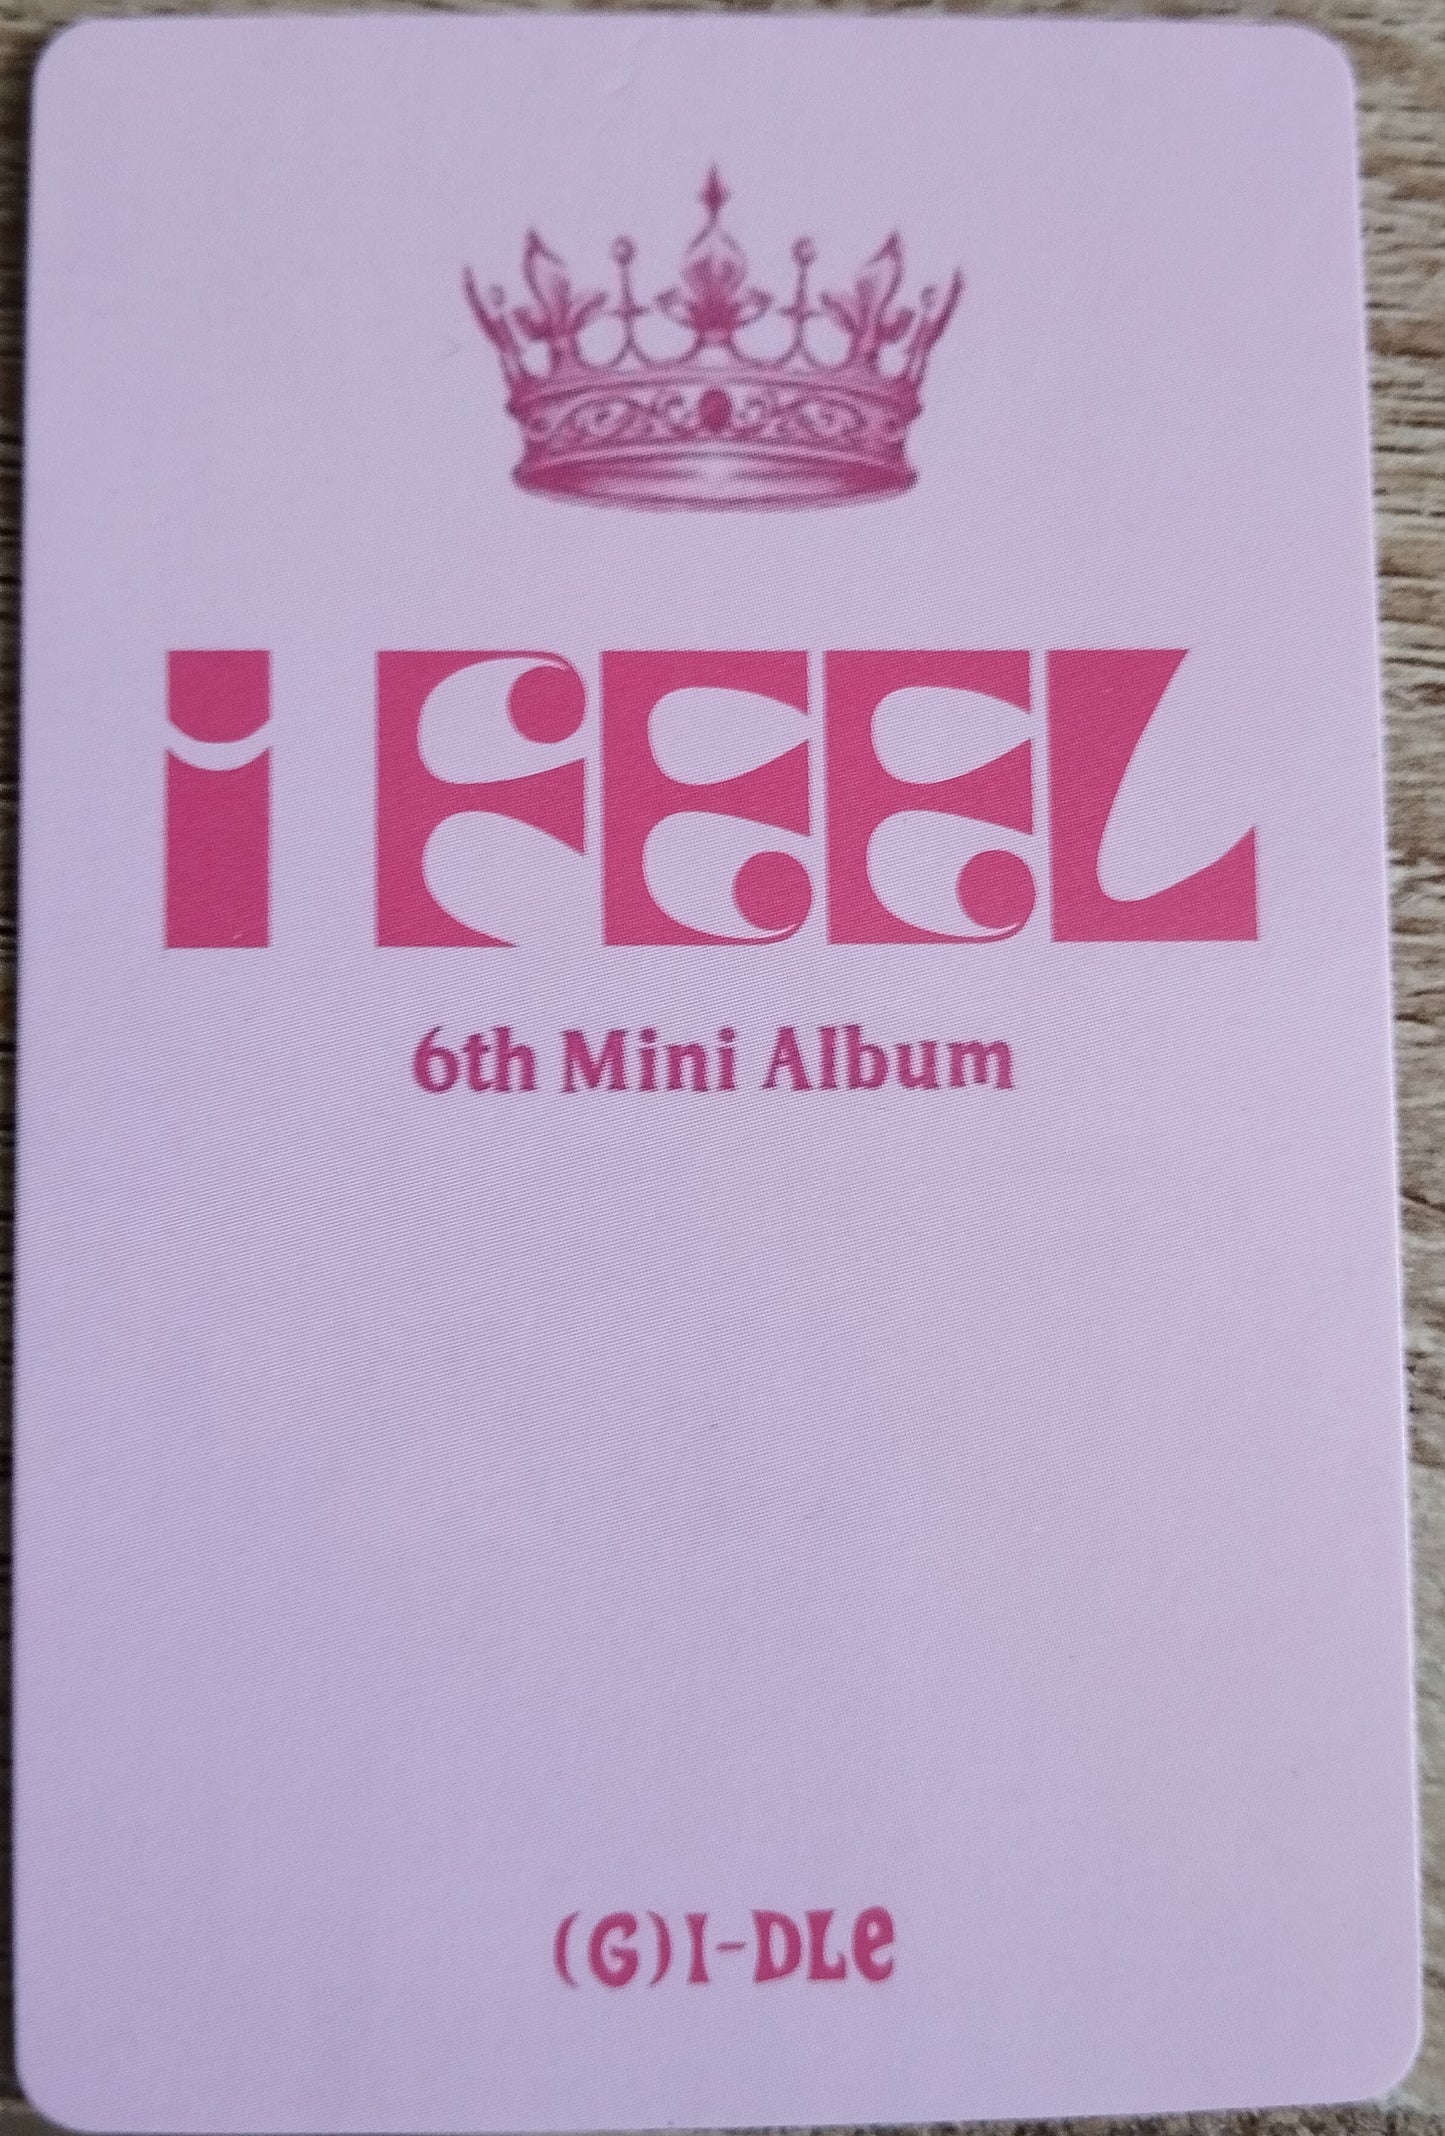 Photocard (G)I-dle I feel 6th mini album